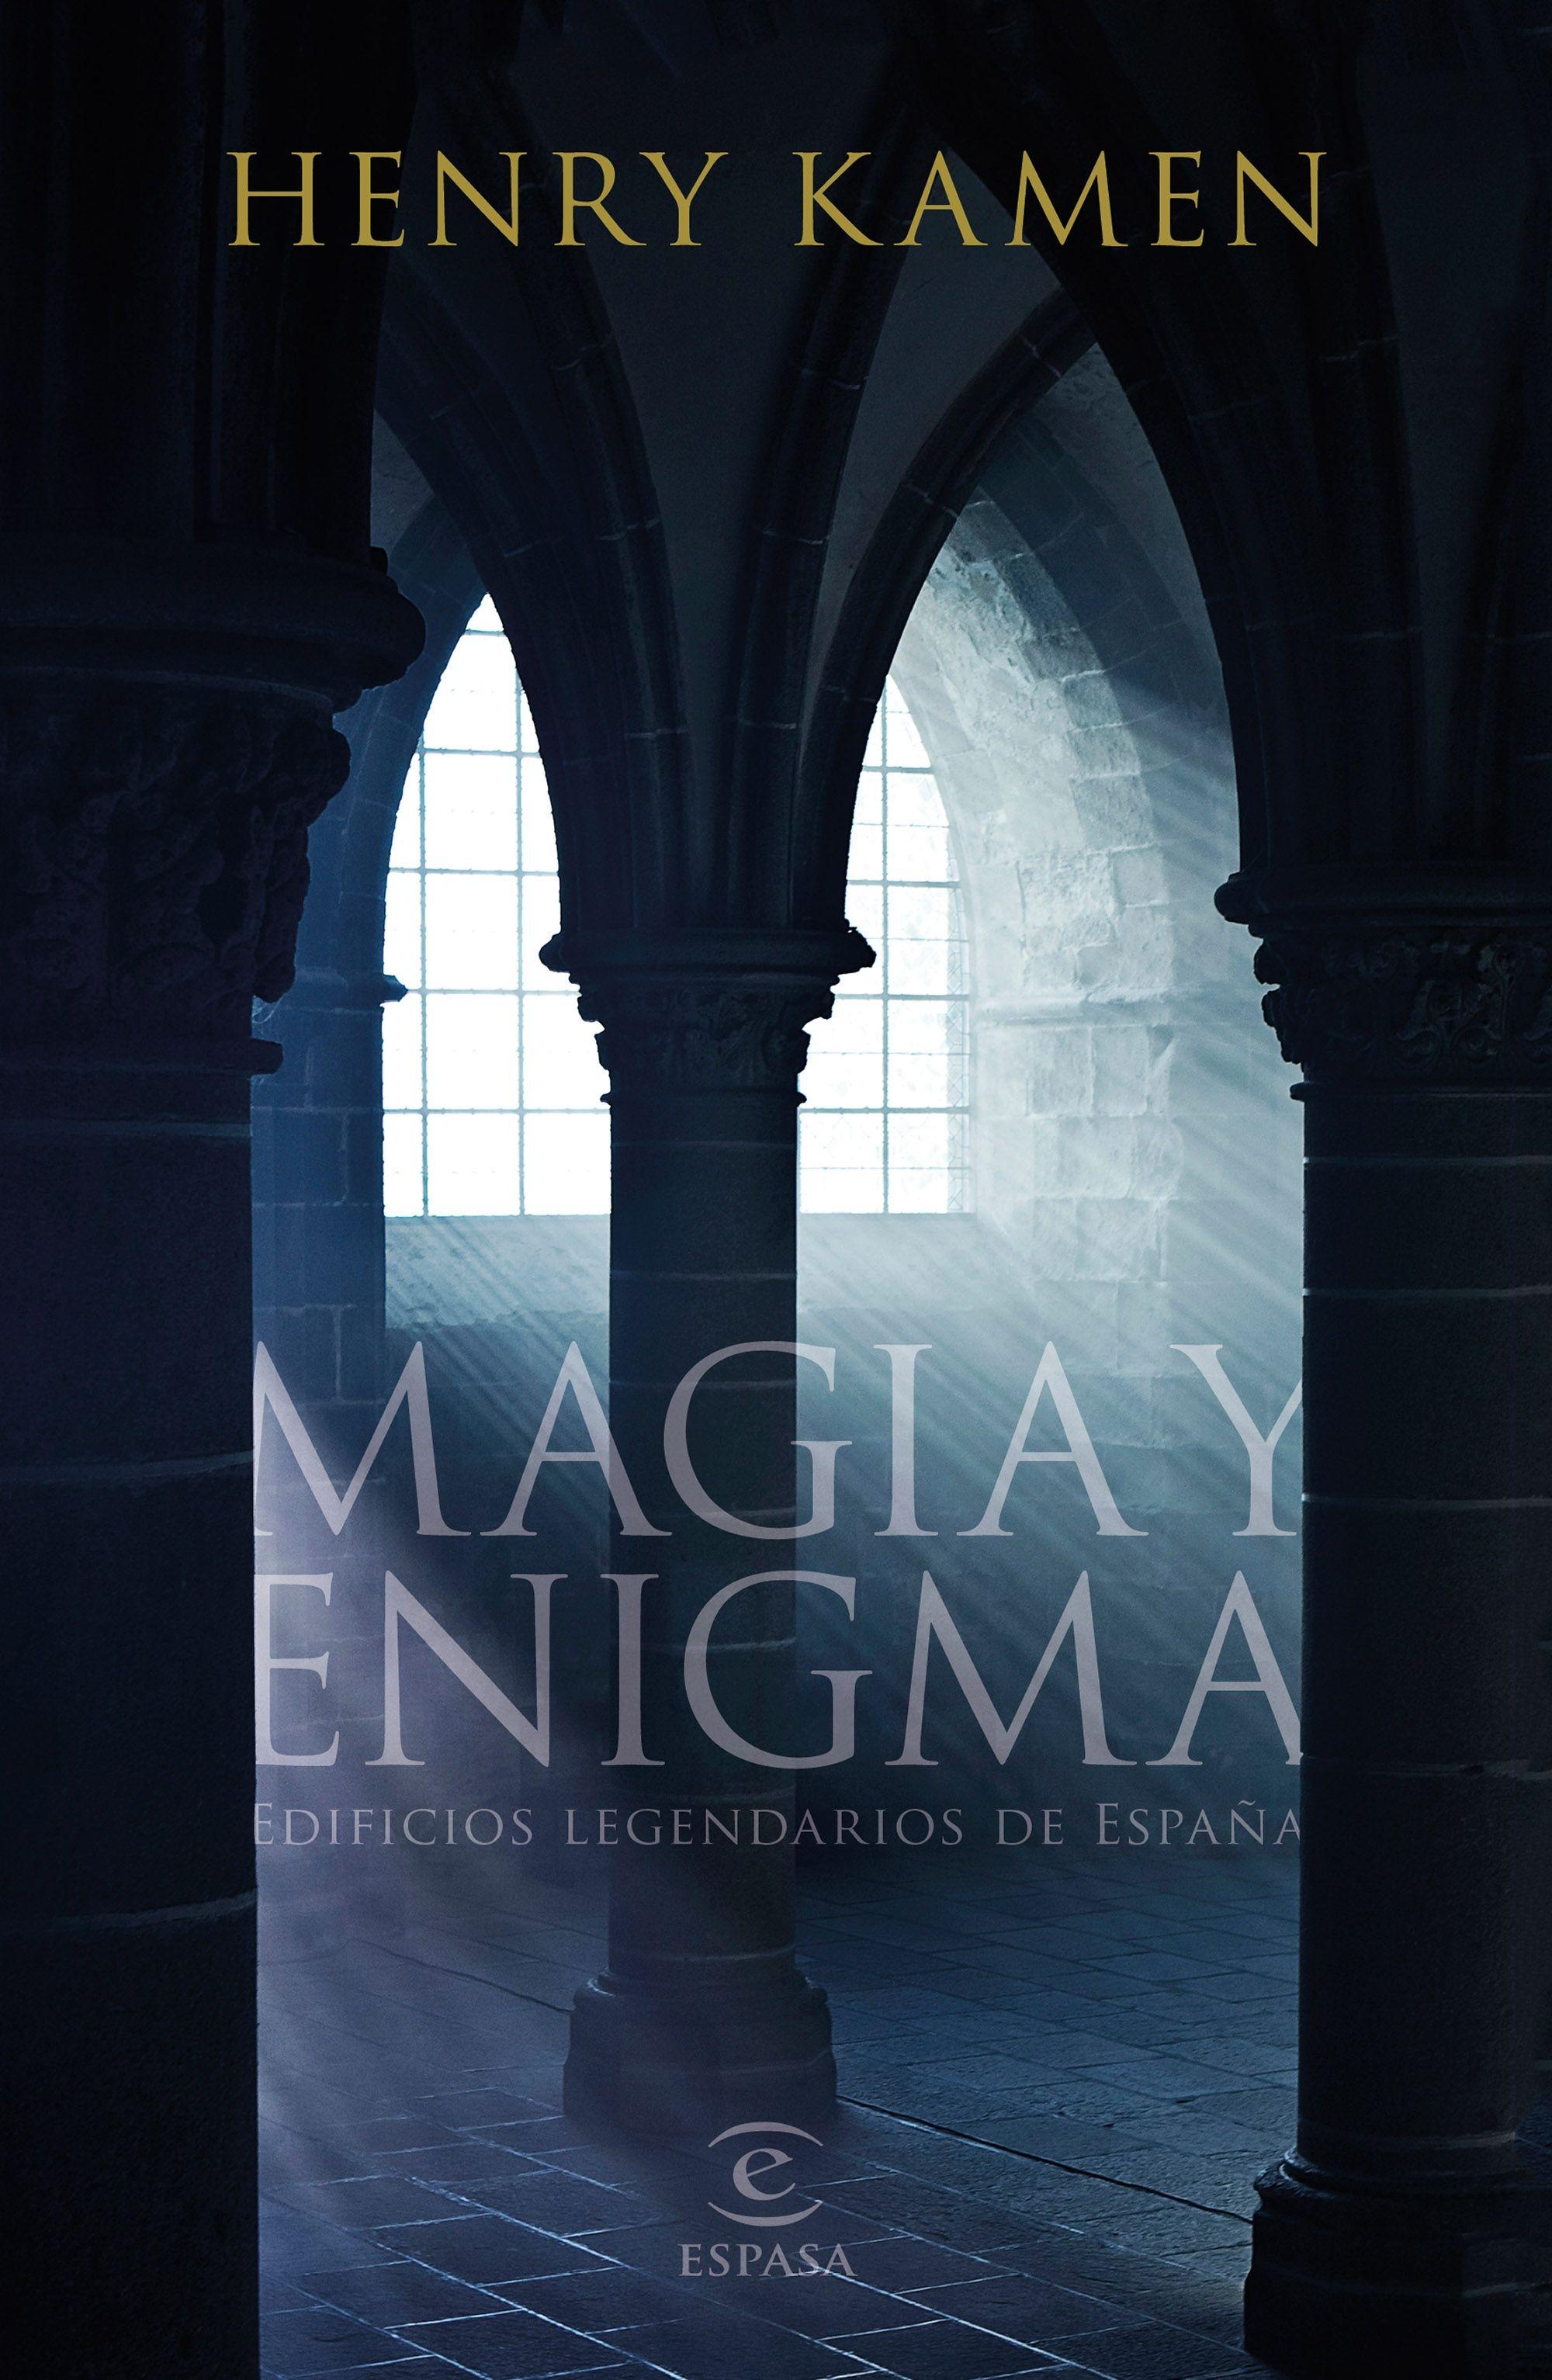 Magia y enigma "Edificios legendarios de España". 